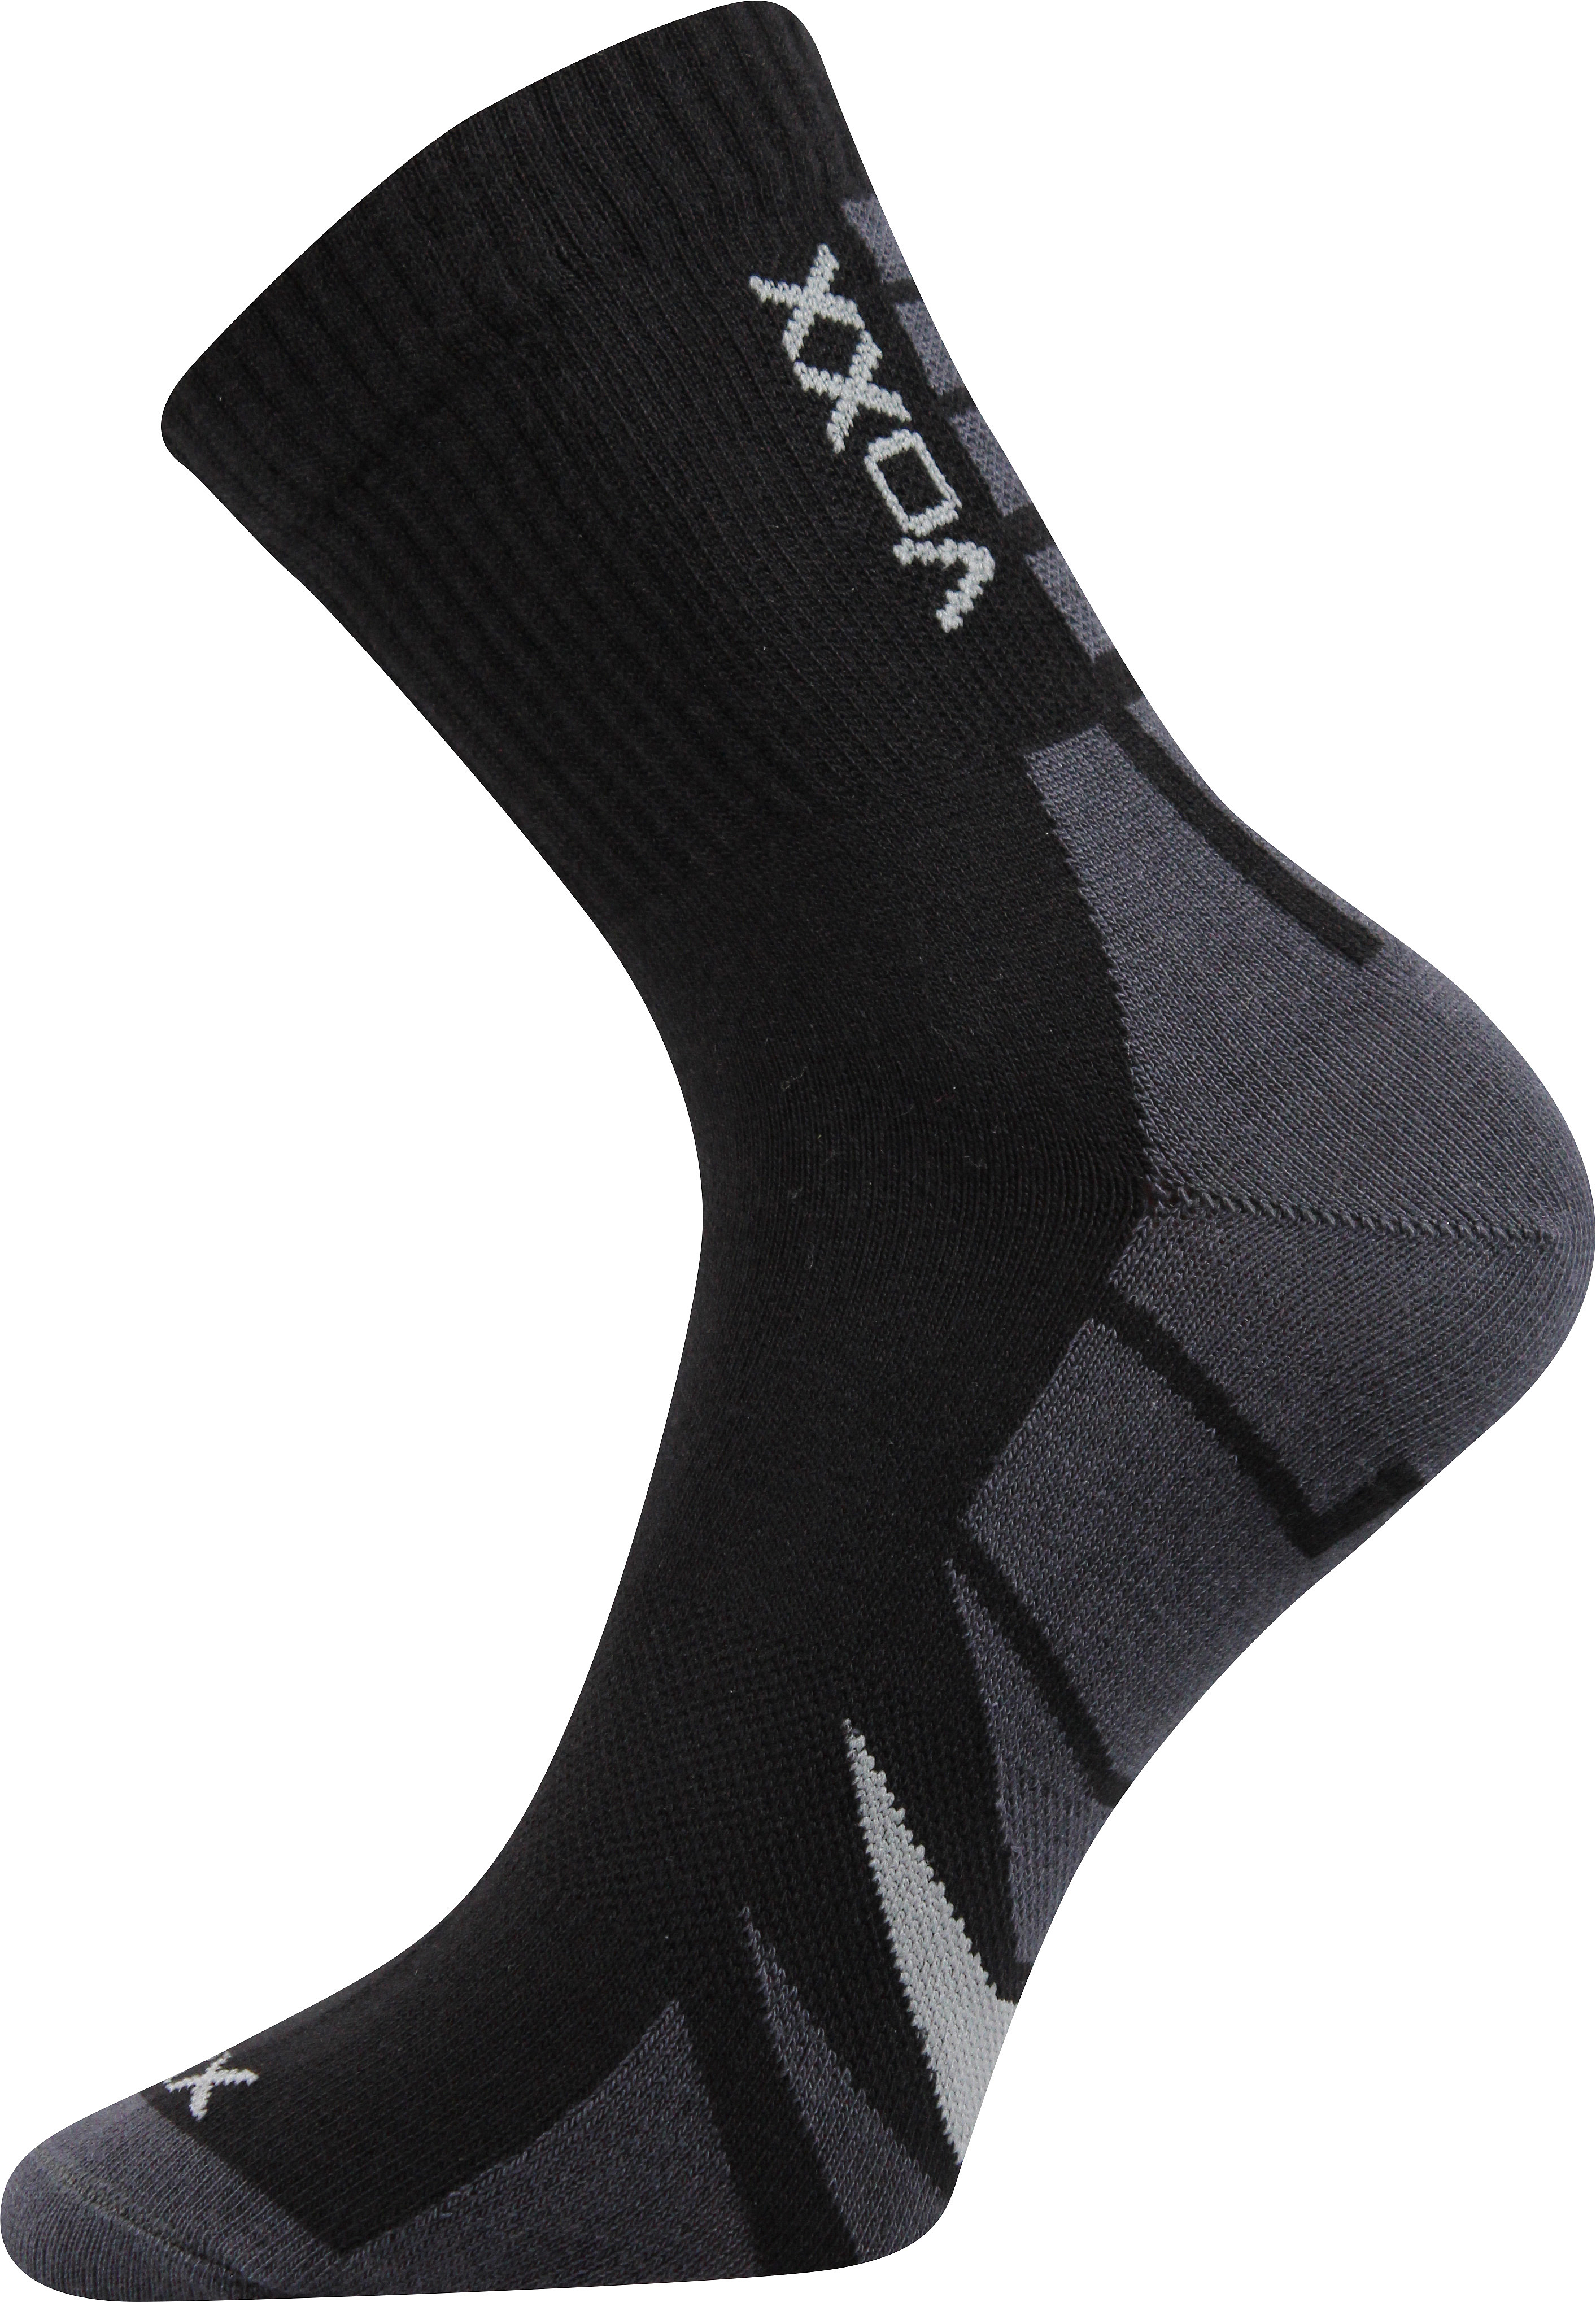 Ponožky sportovní Voxx Hermes - černé-šedé, 47-50